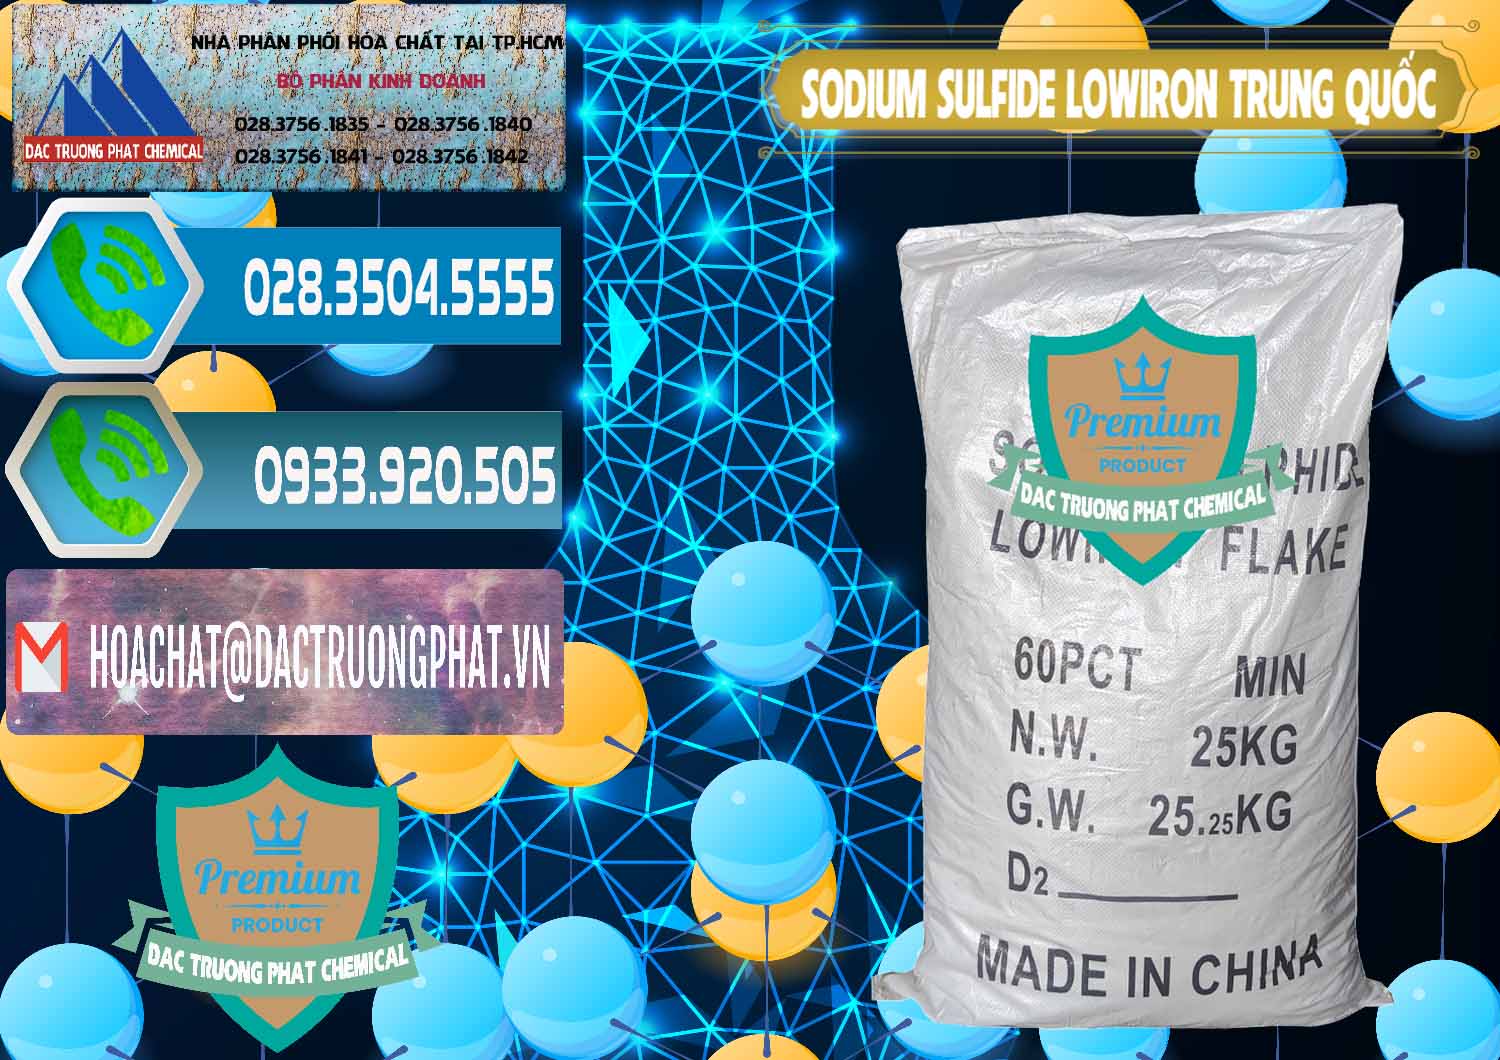 Cty chuyên bán & phân phối Sodium Sulfide NA2S – Đá Thối Lowiron Trung Quốc China - 0227 - Chuyên bán ( cung cấp ) hóa chất tại TP.HCM - congtyhoachat.net